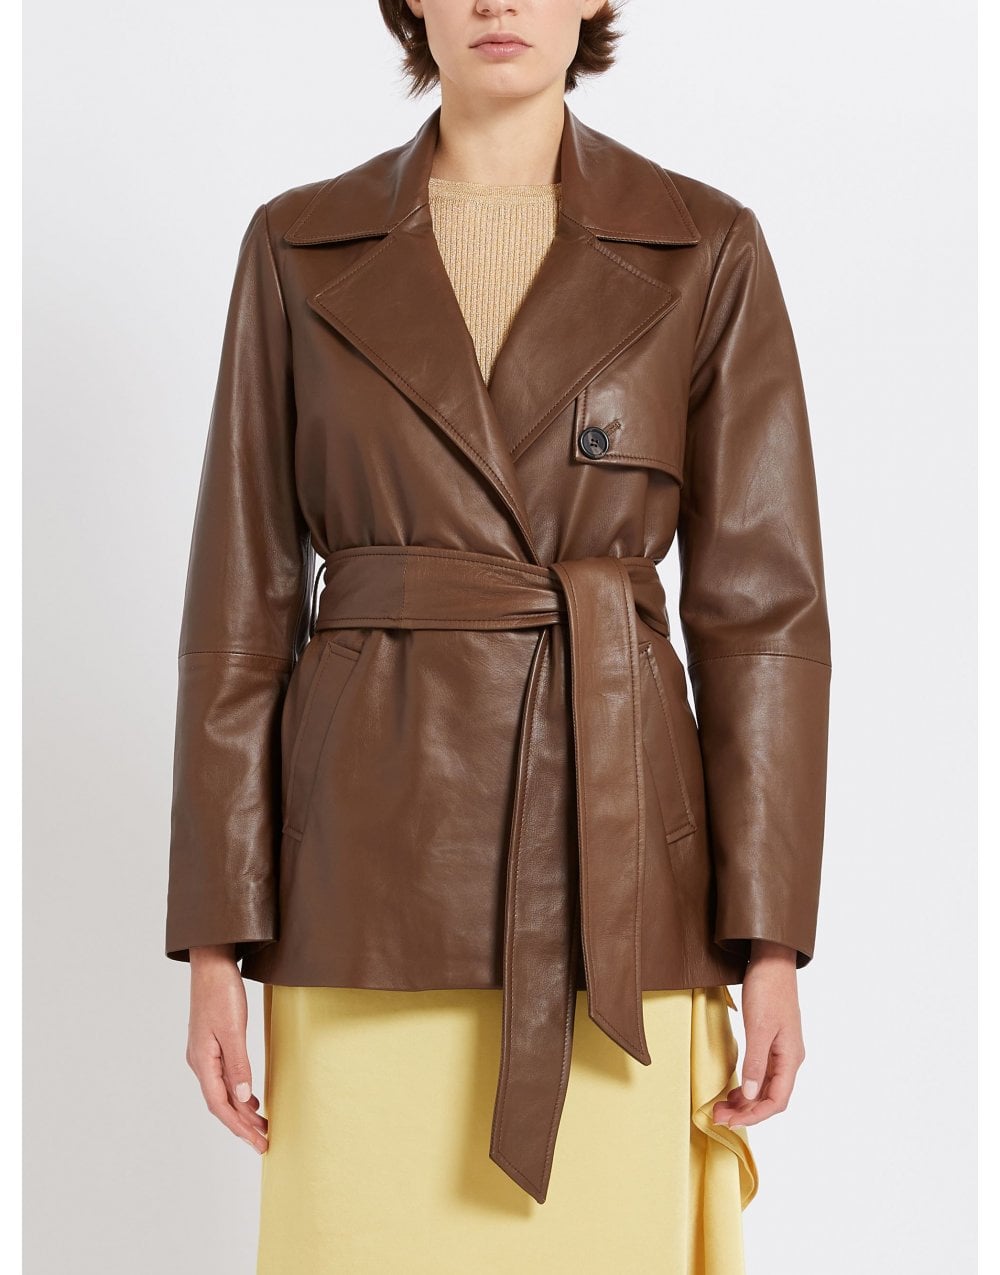 Marella Marella Garbata Leather Jacket Size: 14, Col: Brown